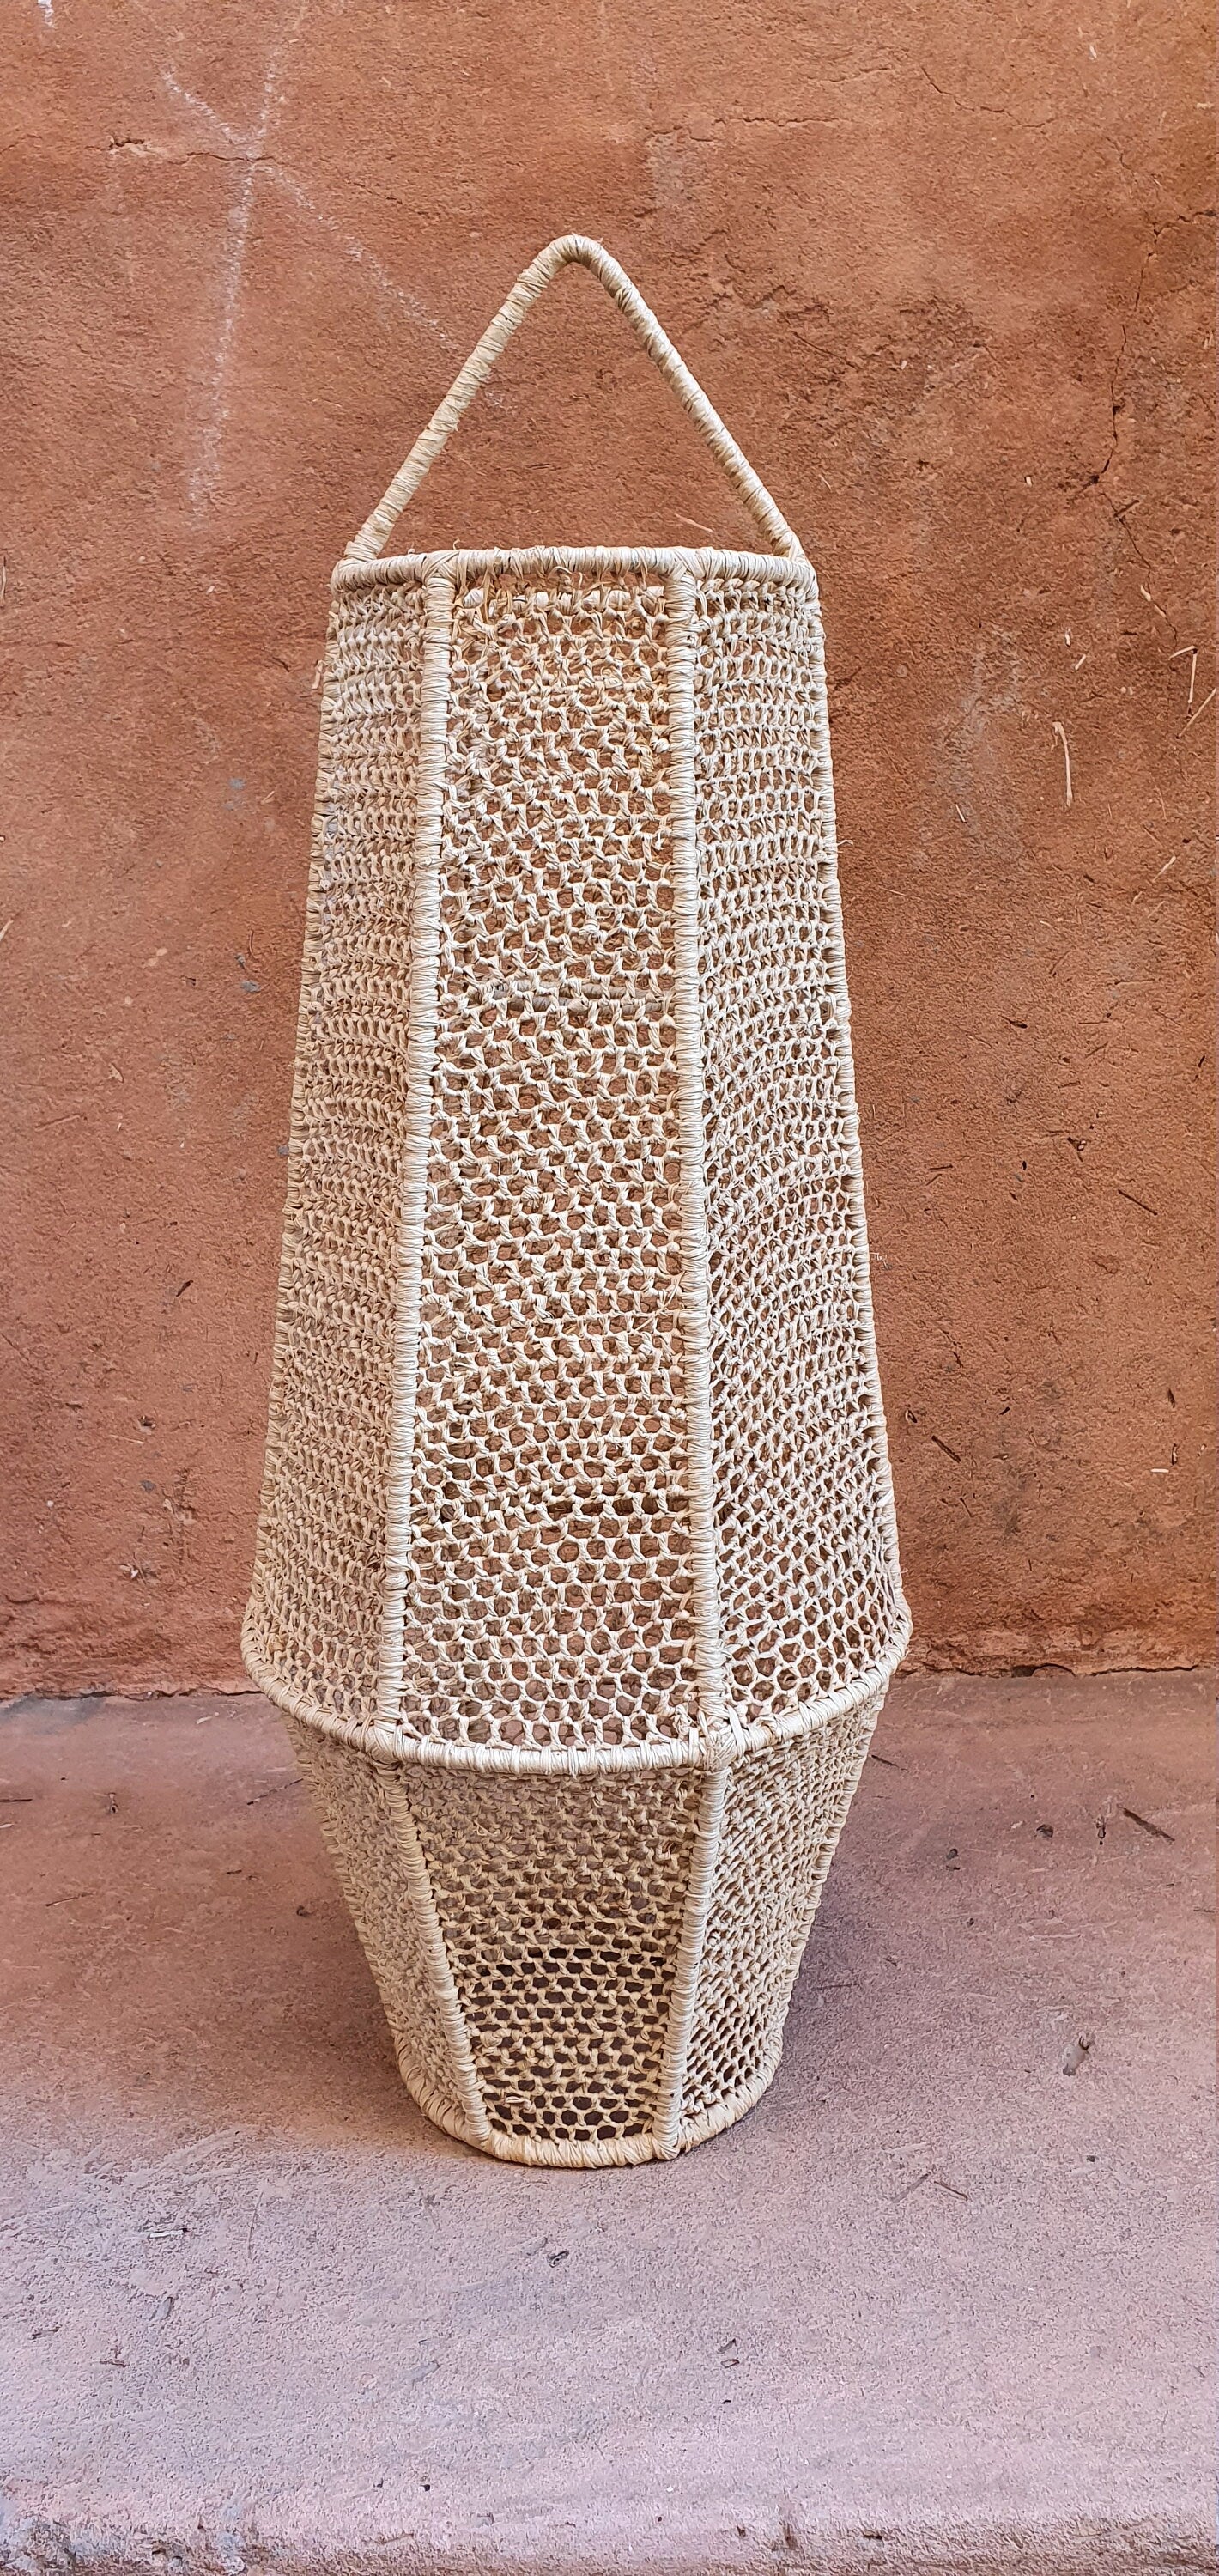 Abat-jour lanterne marocaine en raphia naturel et dentelle délicate.